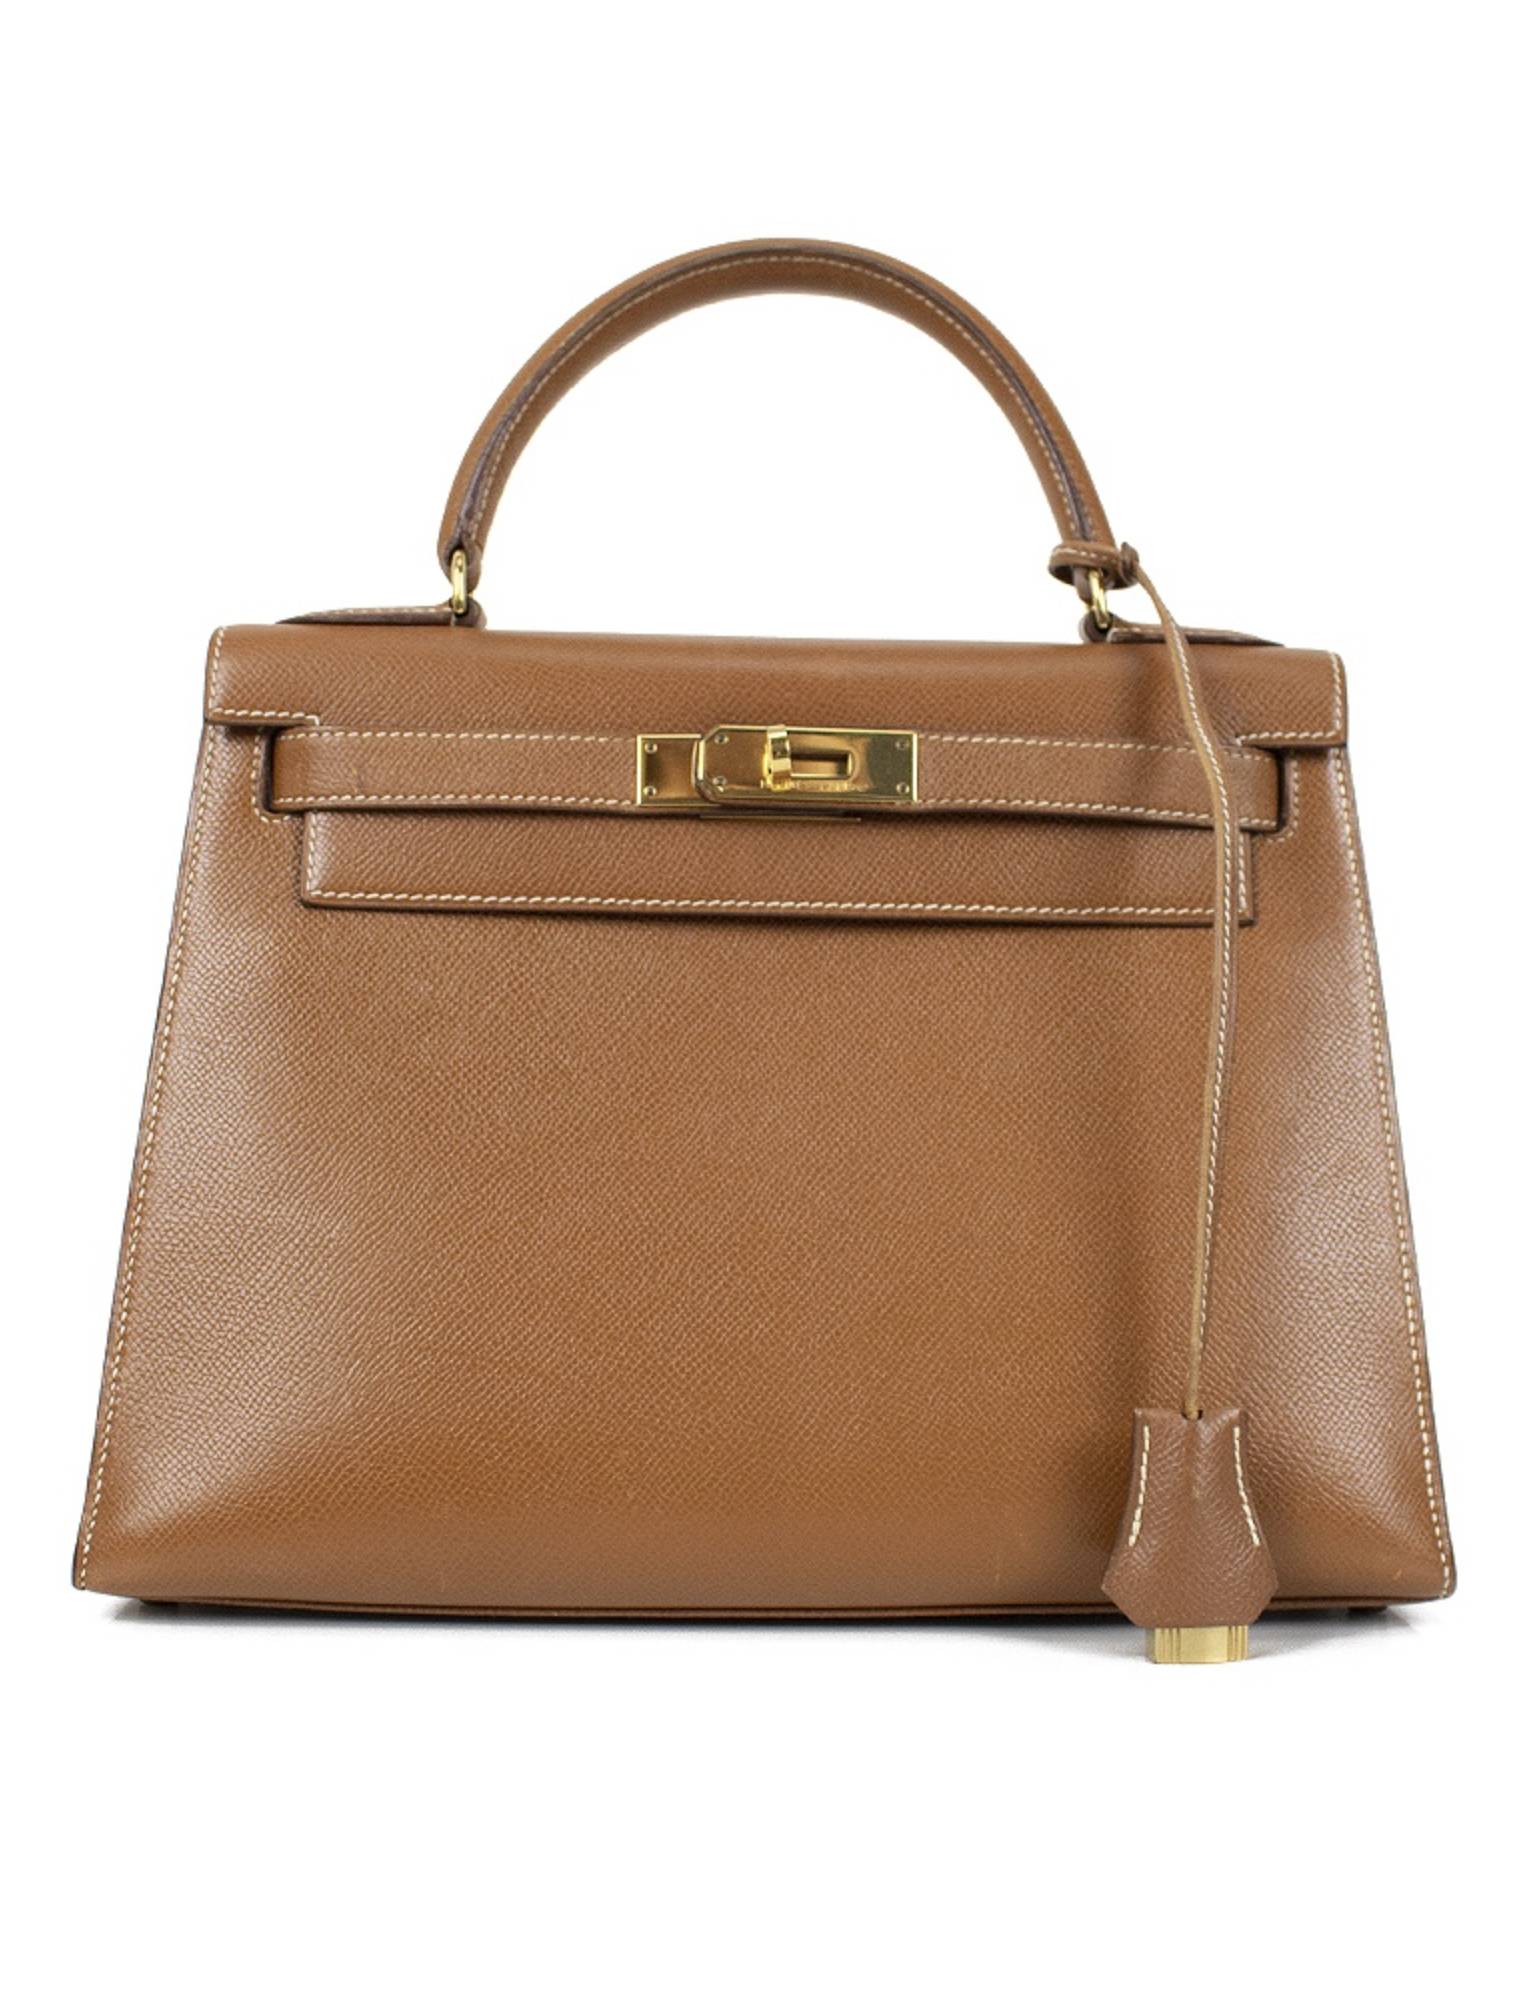 Hermès Kelly 28 (Sellier) Bag $59,000